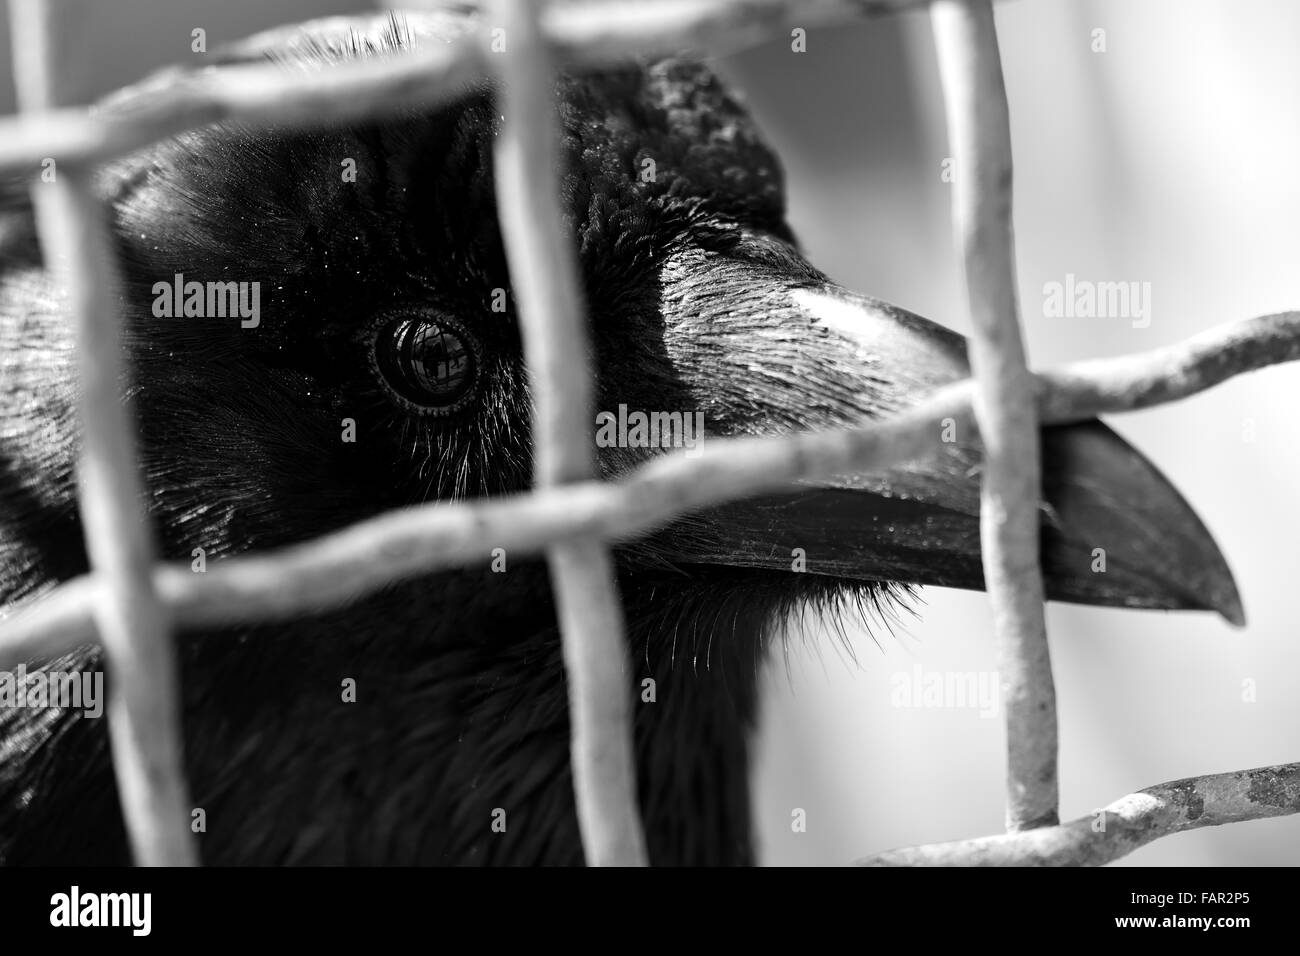 Carrion crow (Corvus corone) in una gabbia. Un close-up di crow's head, mostrando forte becco e occhio lucido, in bianco e nero Foto Stock